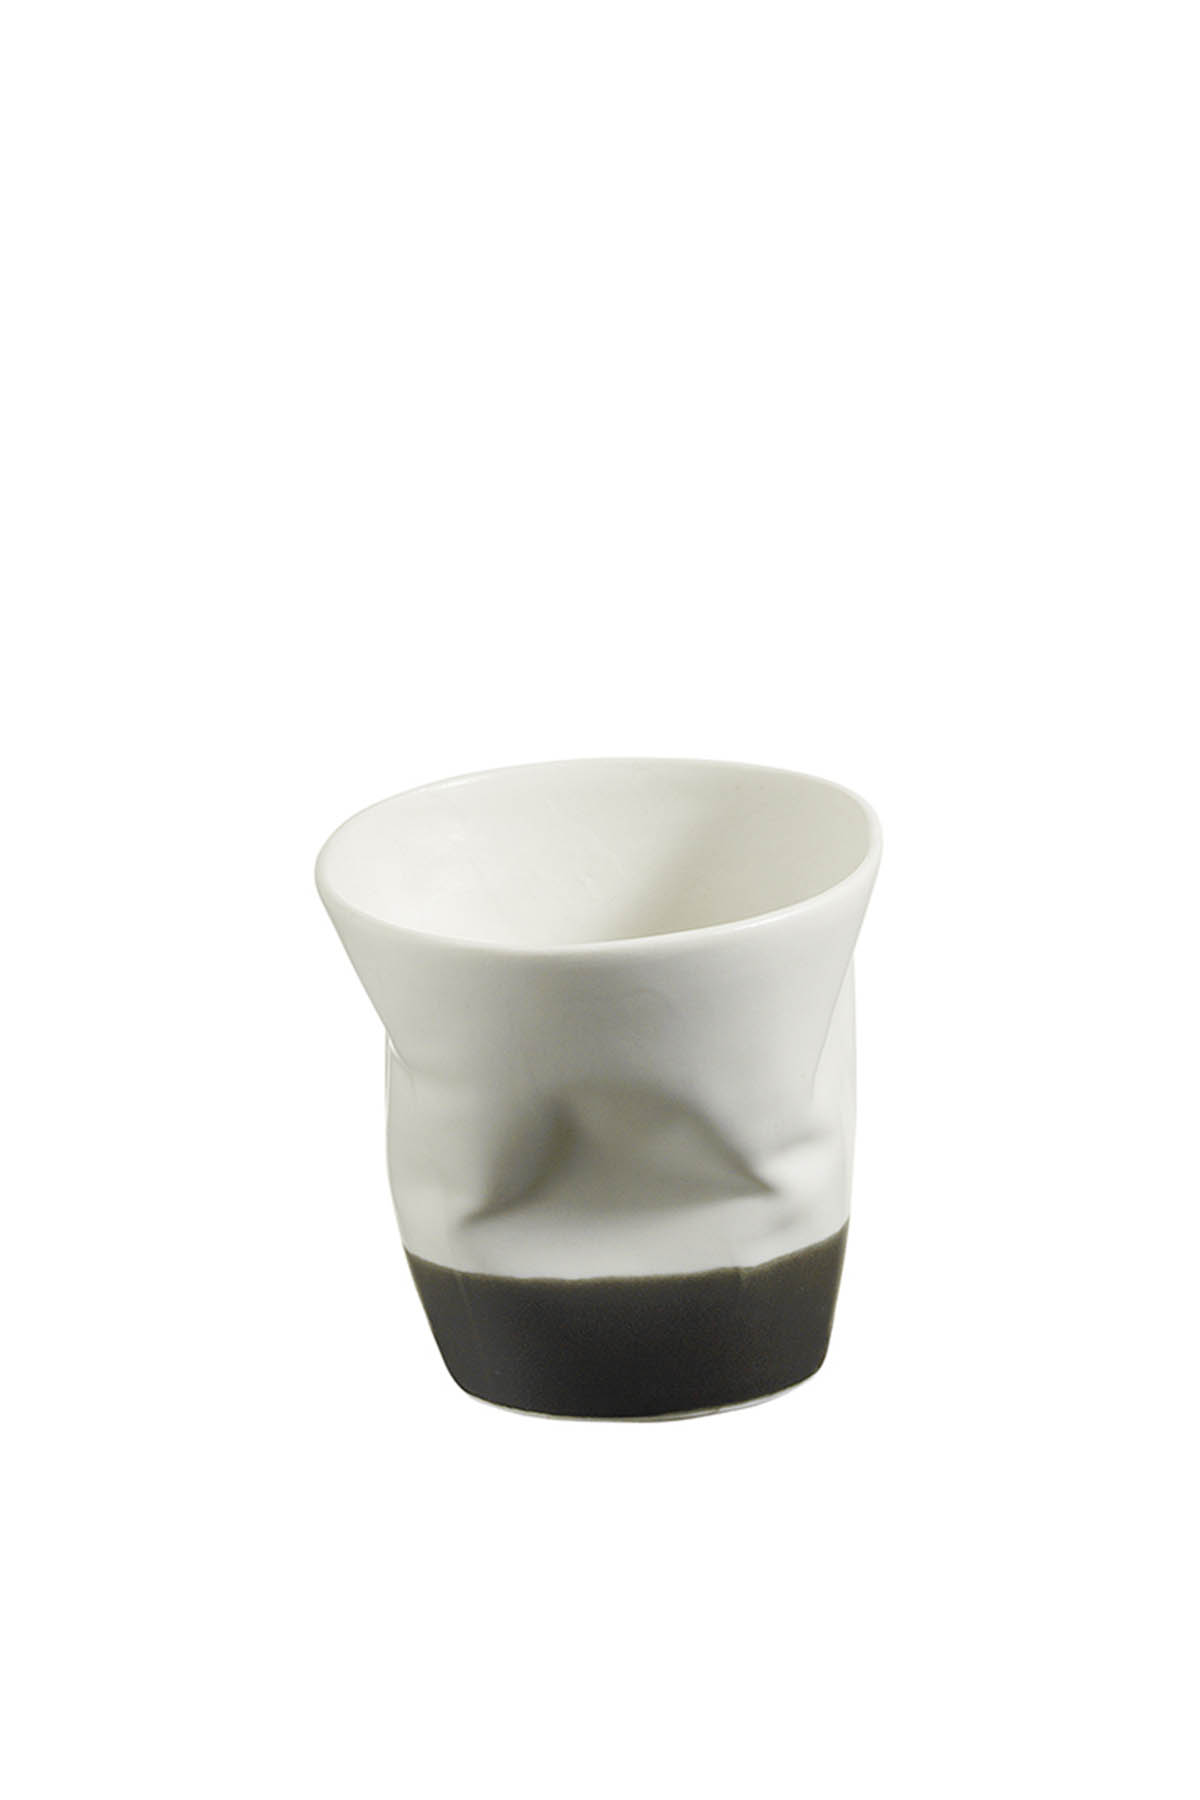 Kütahya Porselen Crash 3 Kişilik Kahve Seti Krem/Siyah